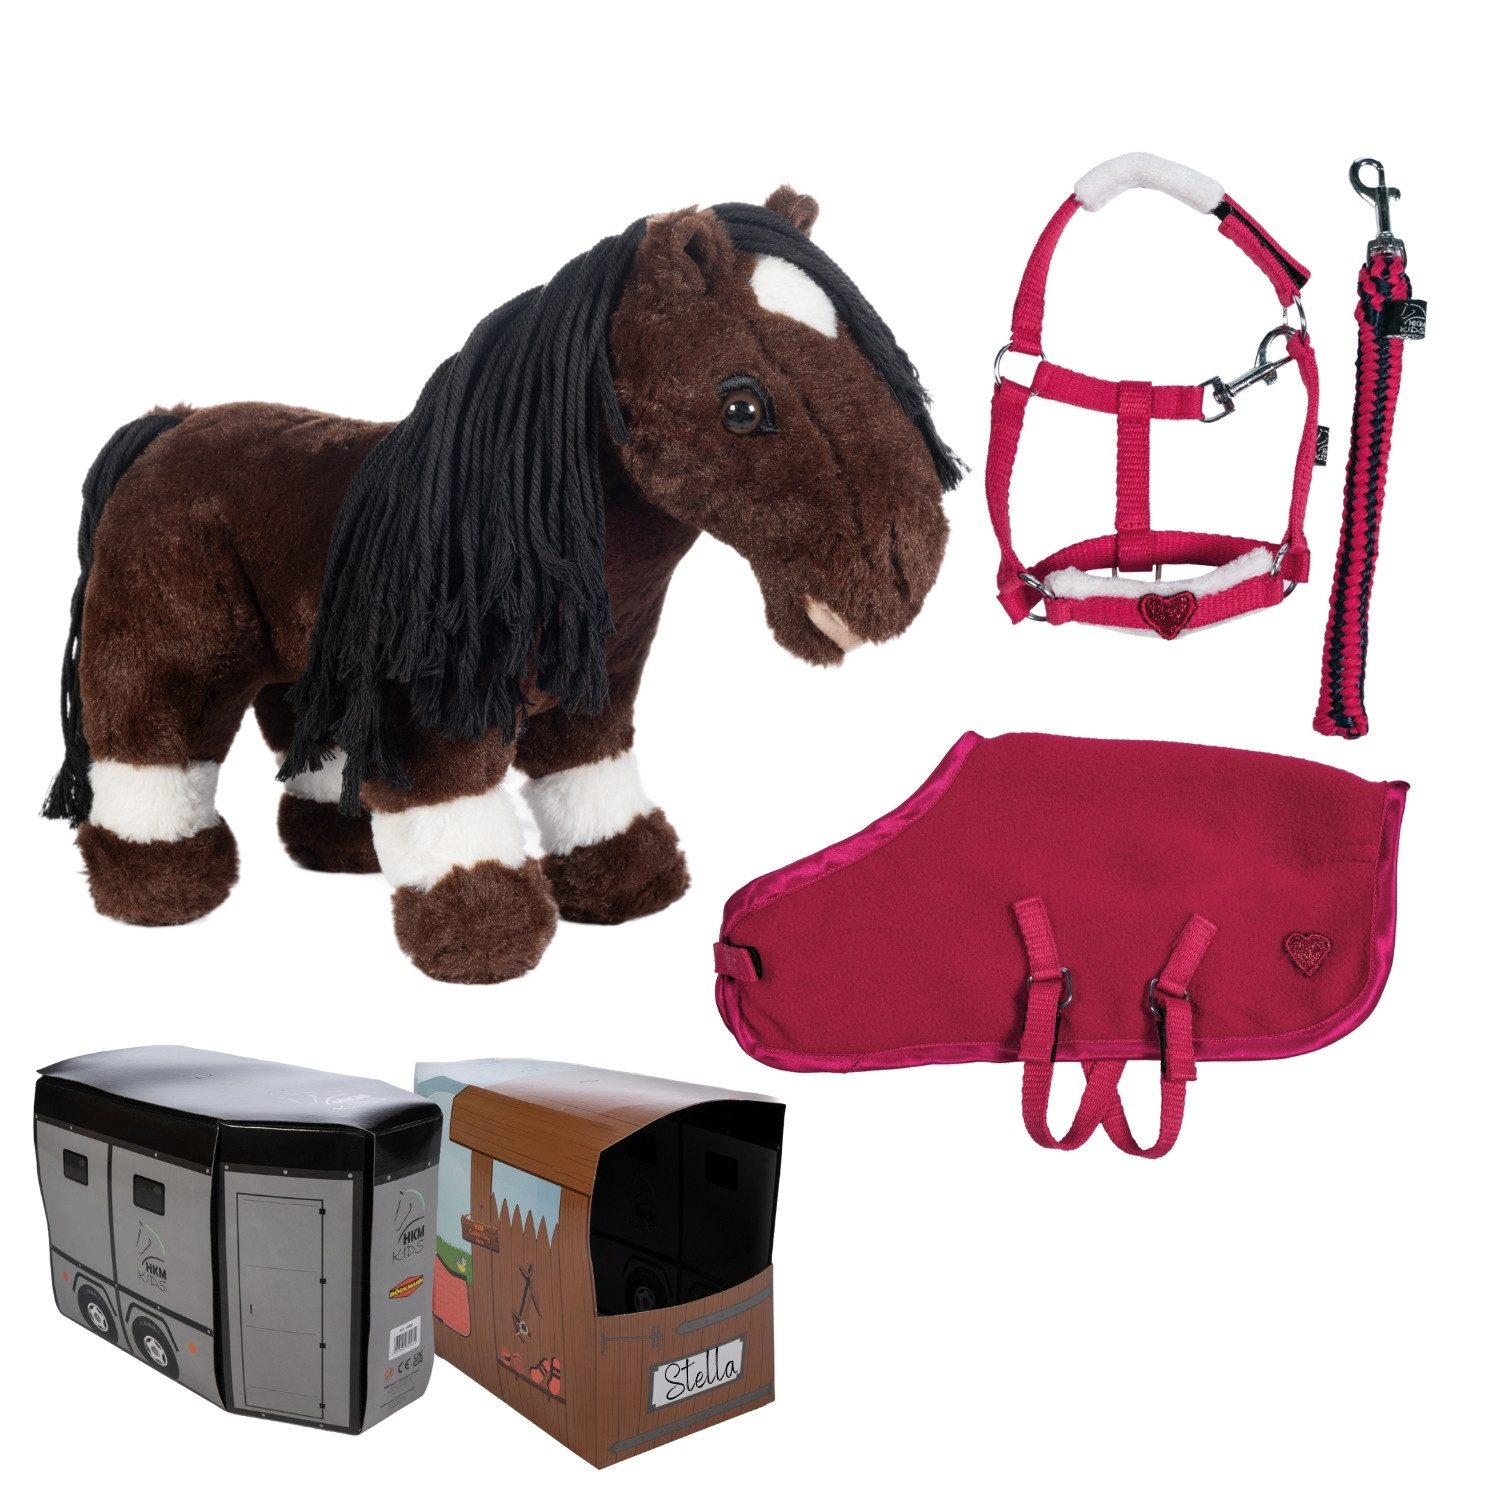 HKM Kuscheltier HKM Cuddle Pony in Braun mit Starter-Set in Rot.